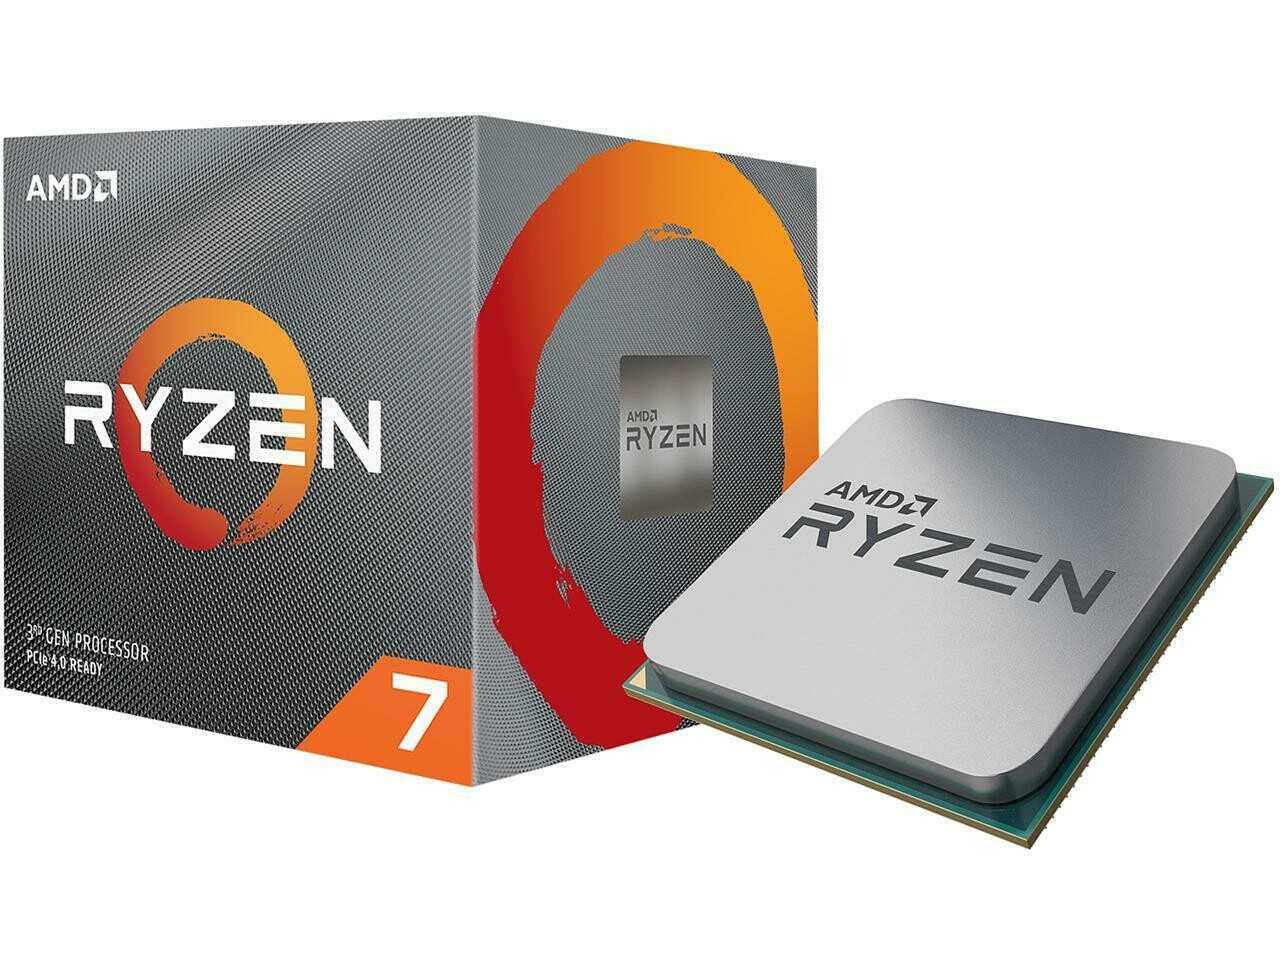 AMD Ryzen 7 3800X - короткий но максимально информативный обзор Для большего удобства добавлены характеристики отзывы и видео